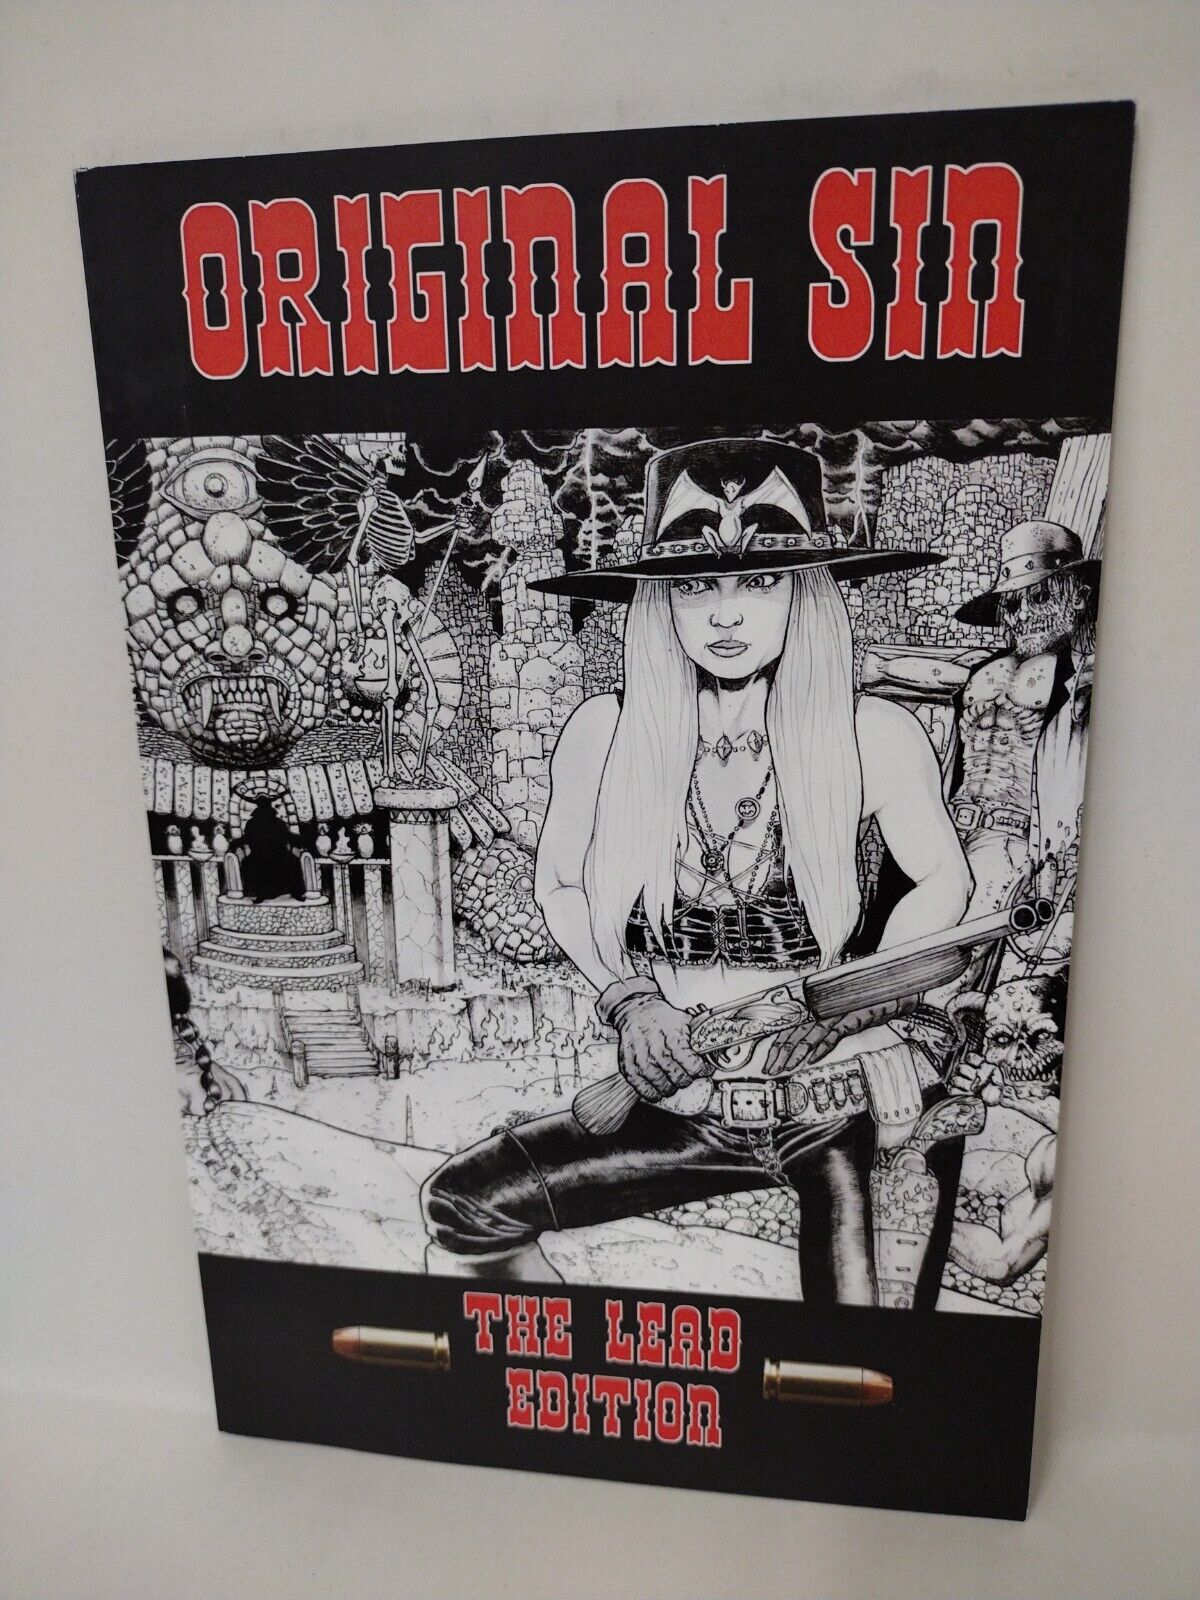 Original Sin Vol 1 (2012) GIH Lead Edition Wild Angels TPB Signed Joe Tim Vigil